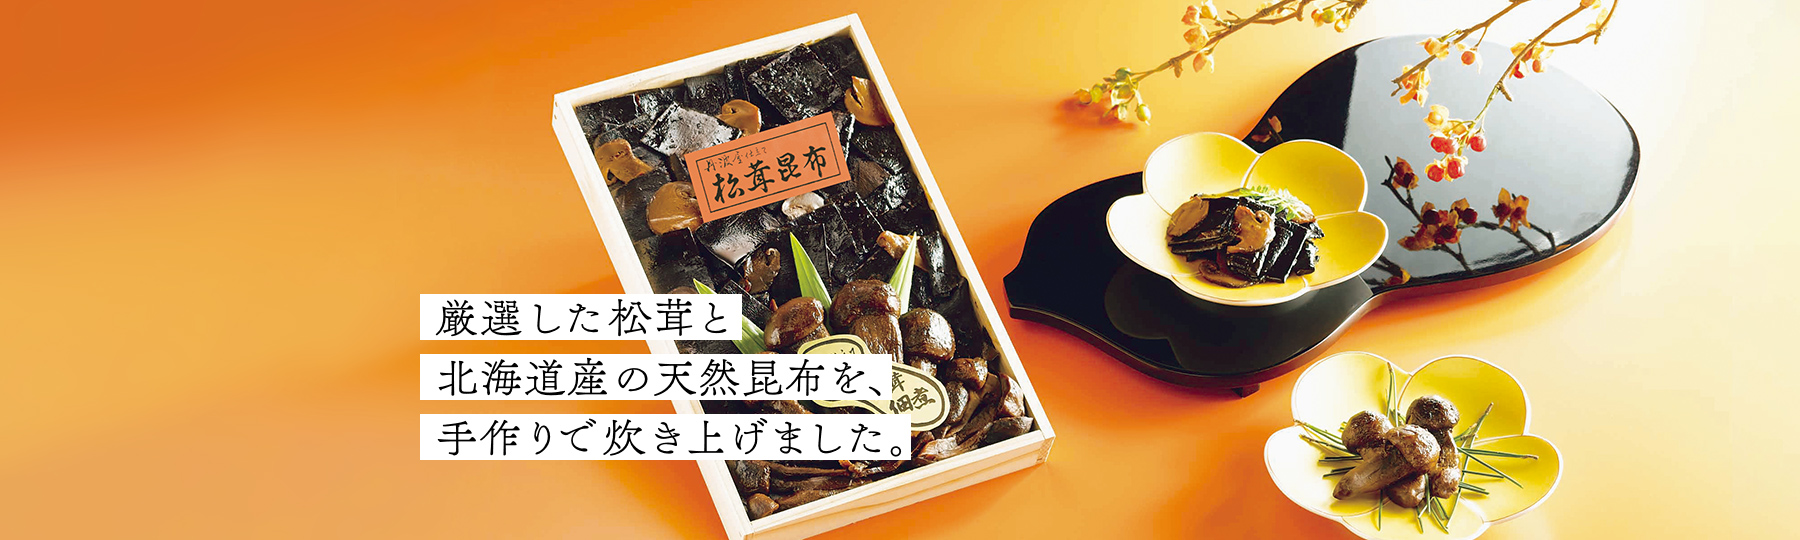 厳選した松茸と北海道産の天然昆布を、手作りで炊き上げました。